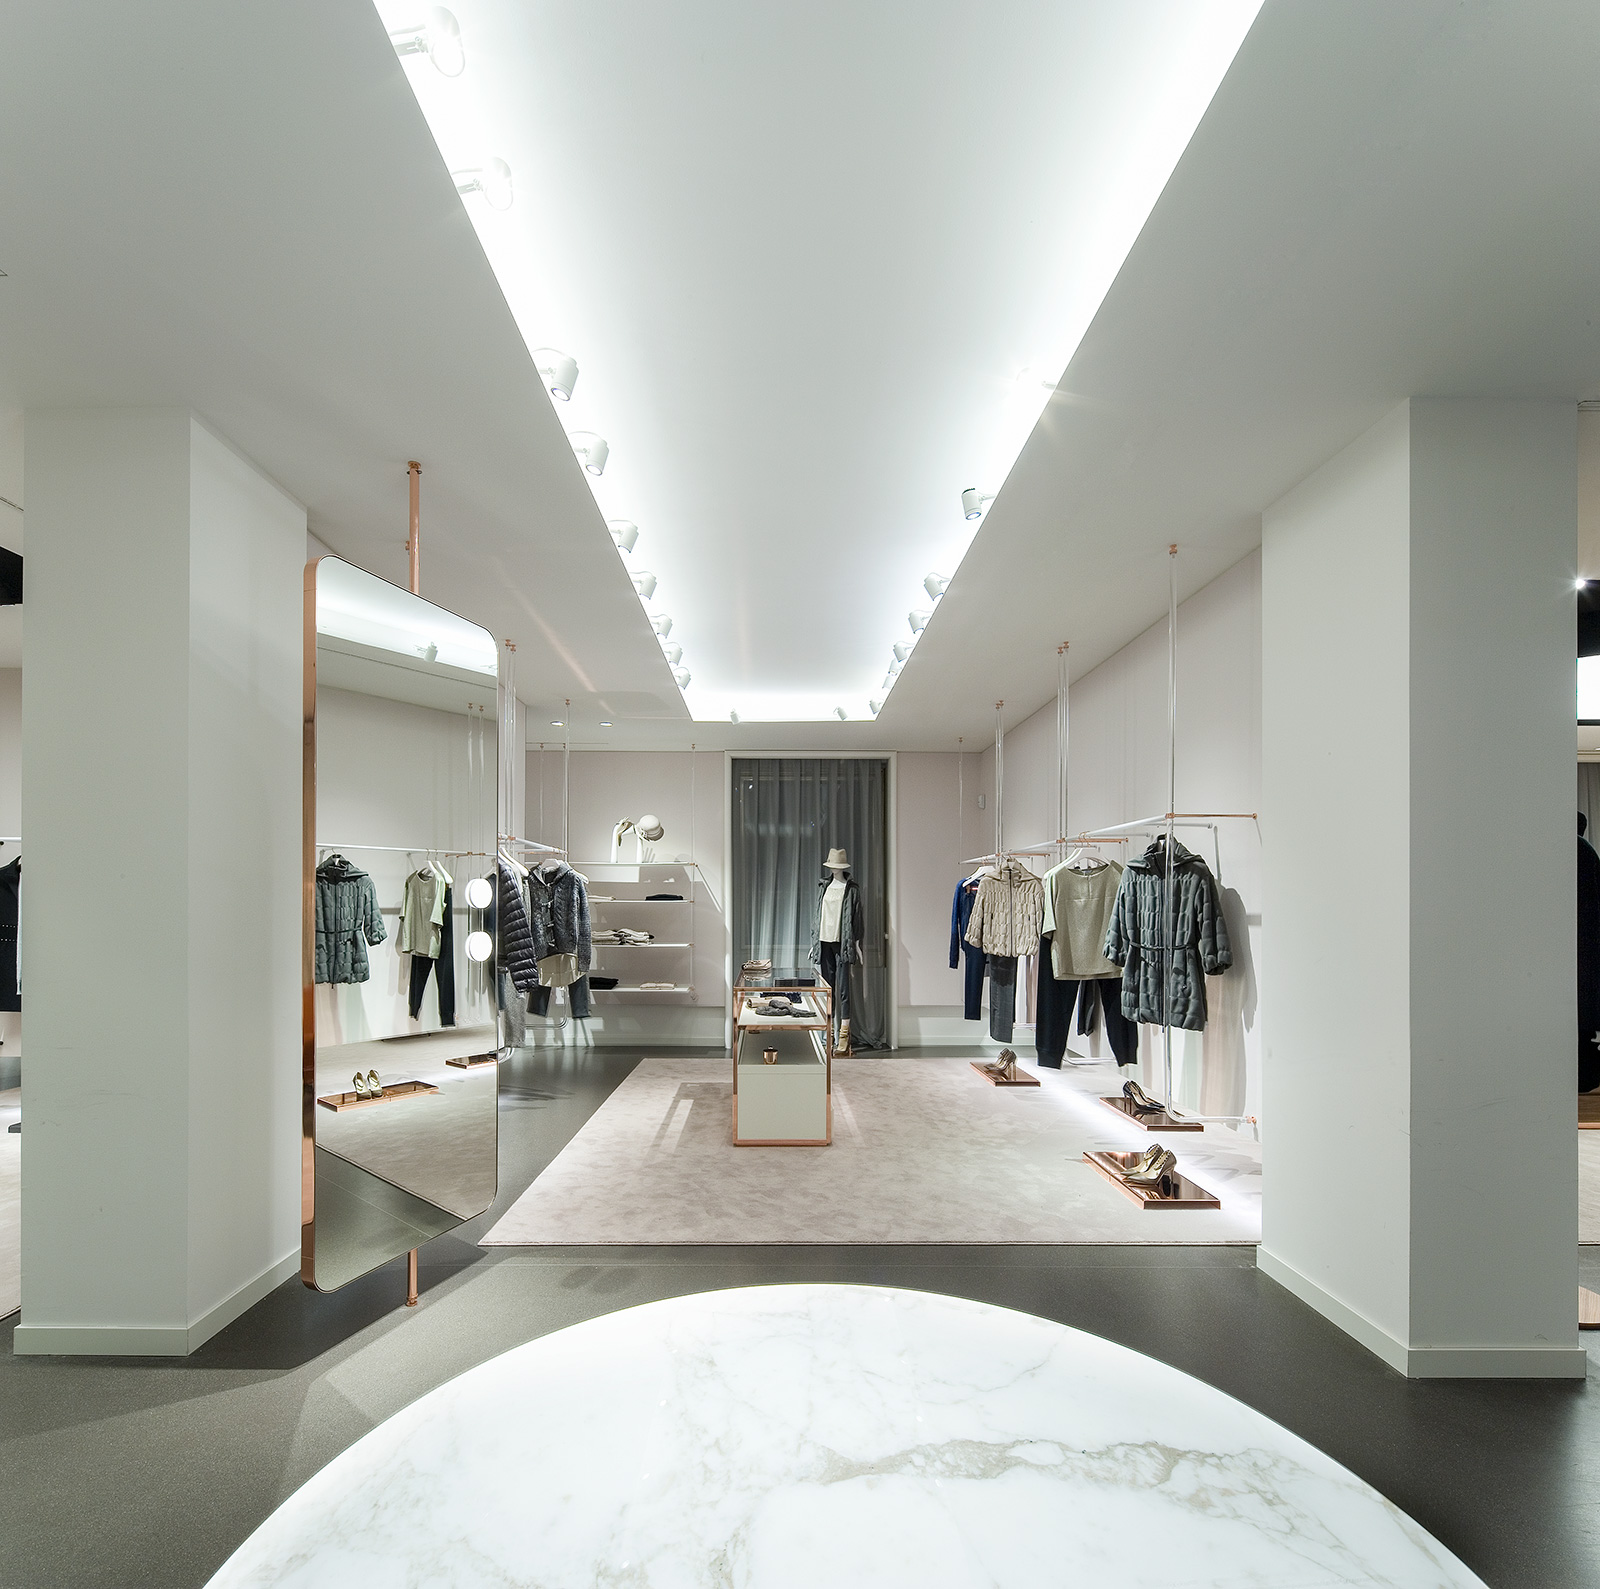 Marella Boutique Milan - Retail Lighting - Metis Lighting